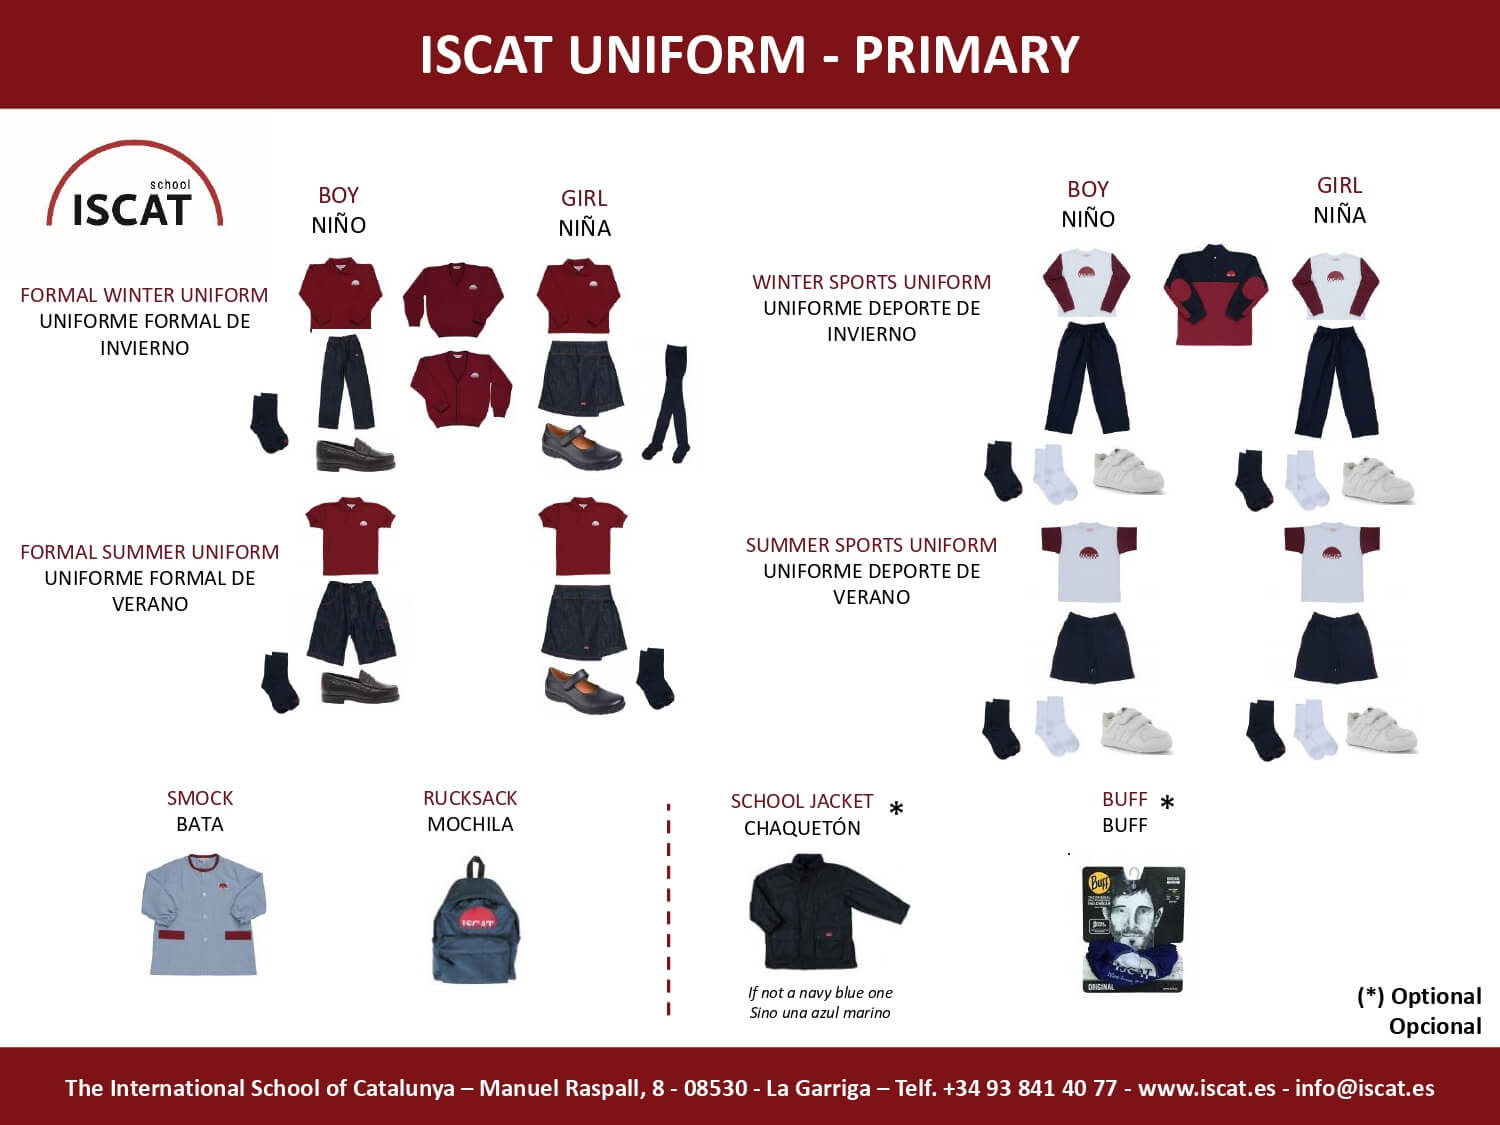 ISCAT-school-uniform-policy